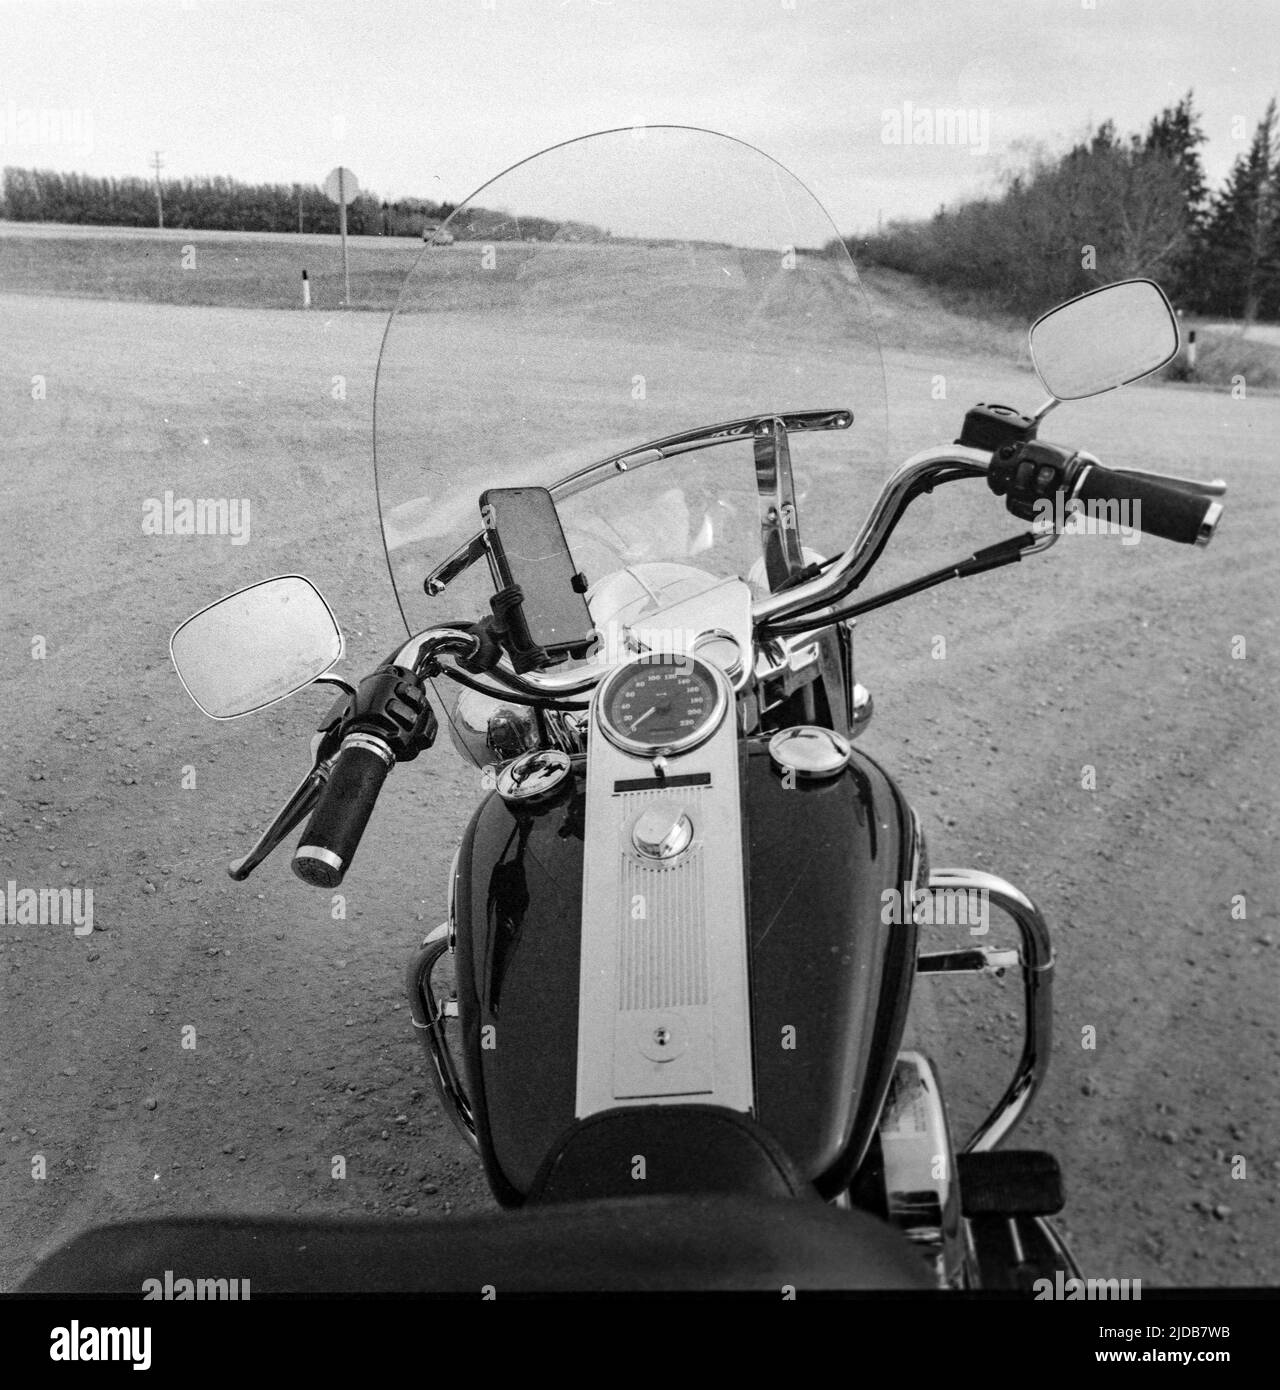 Vue du guidon, du tableau de bord et du pare-brise d'une moto garée sur une route de participation, avec un smartphone dans un support; Manitoba, Canada Banque D'Images